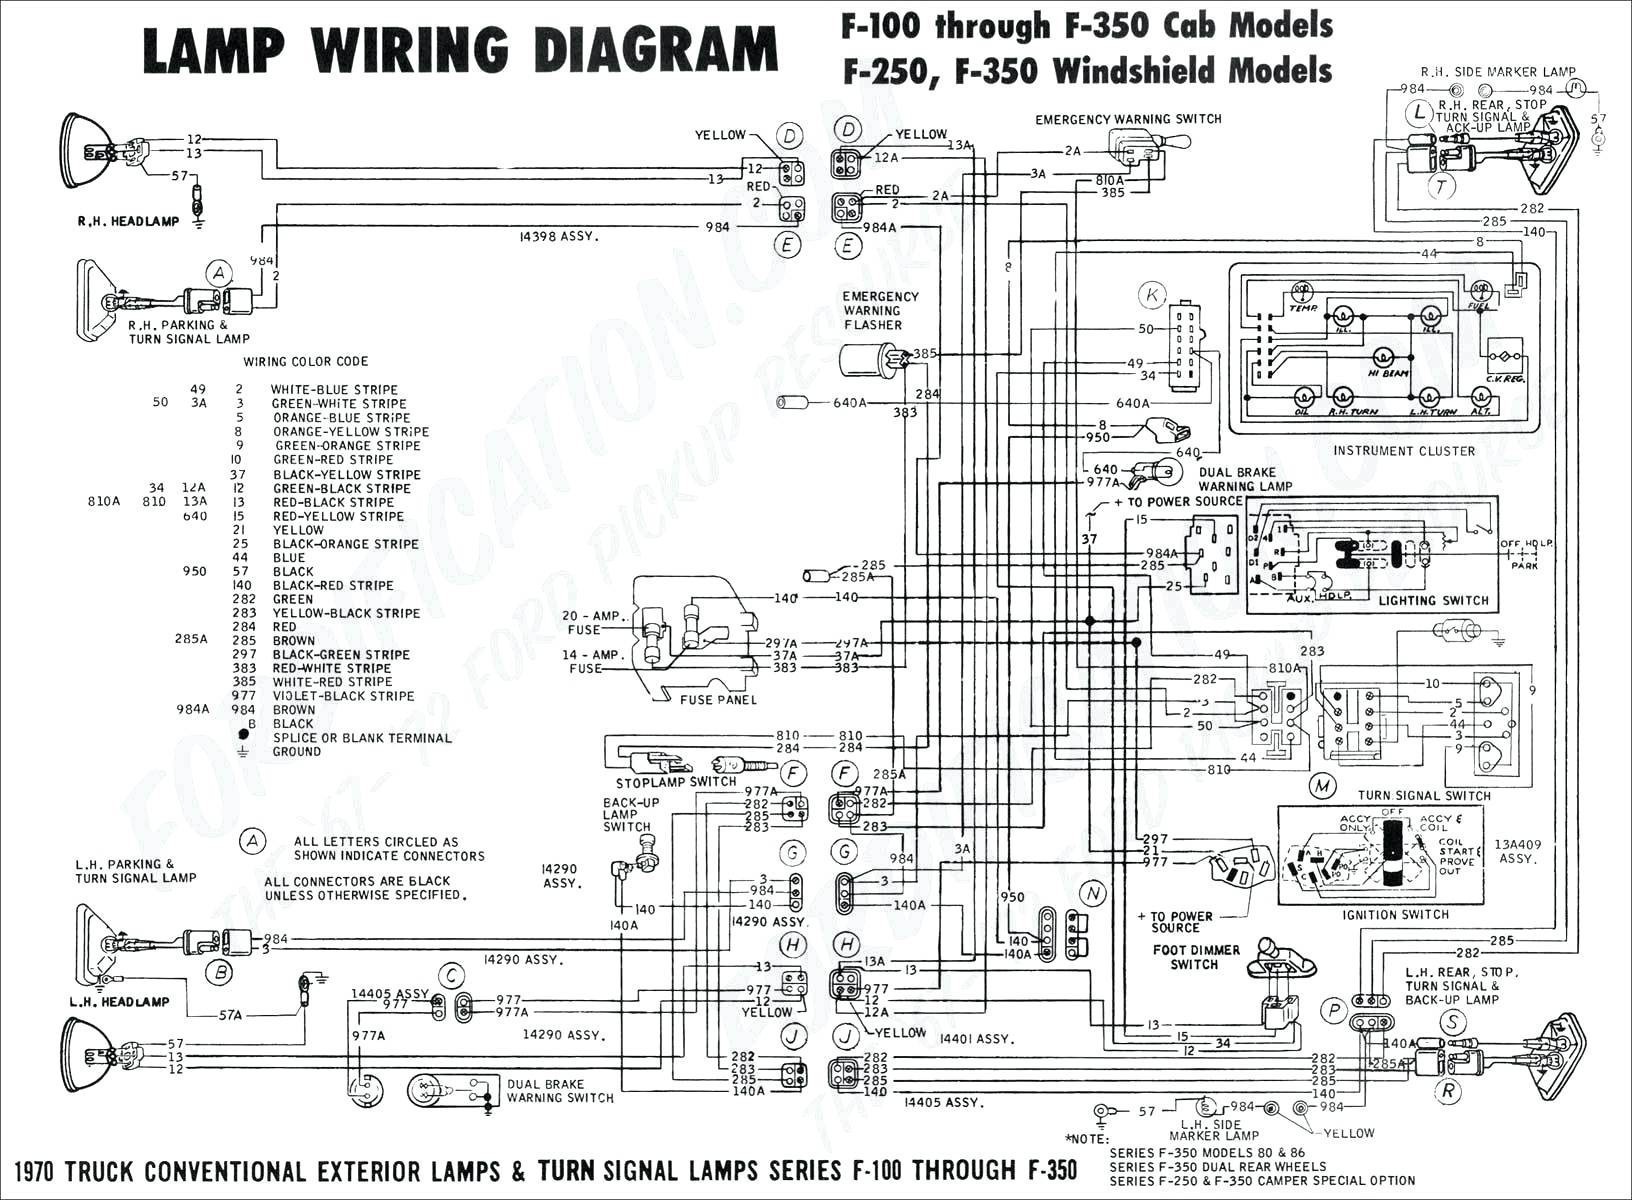 2004 Chevy Silverado Parts Diagram 1997 Chevy Silverado Suspension Diagram Experts Wiring Diagram • Of 2004 Chevy Silverado Parts Diagram